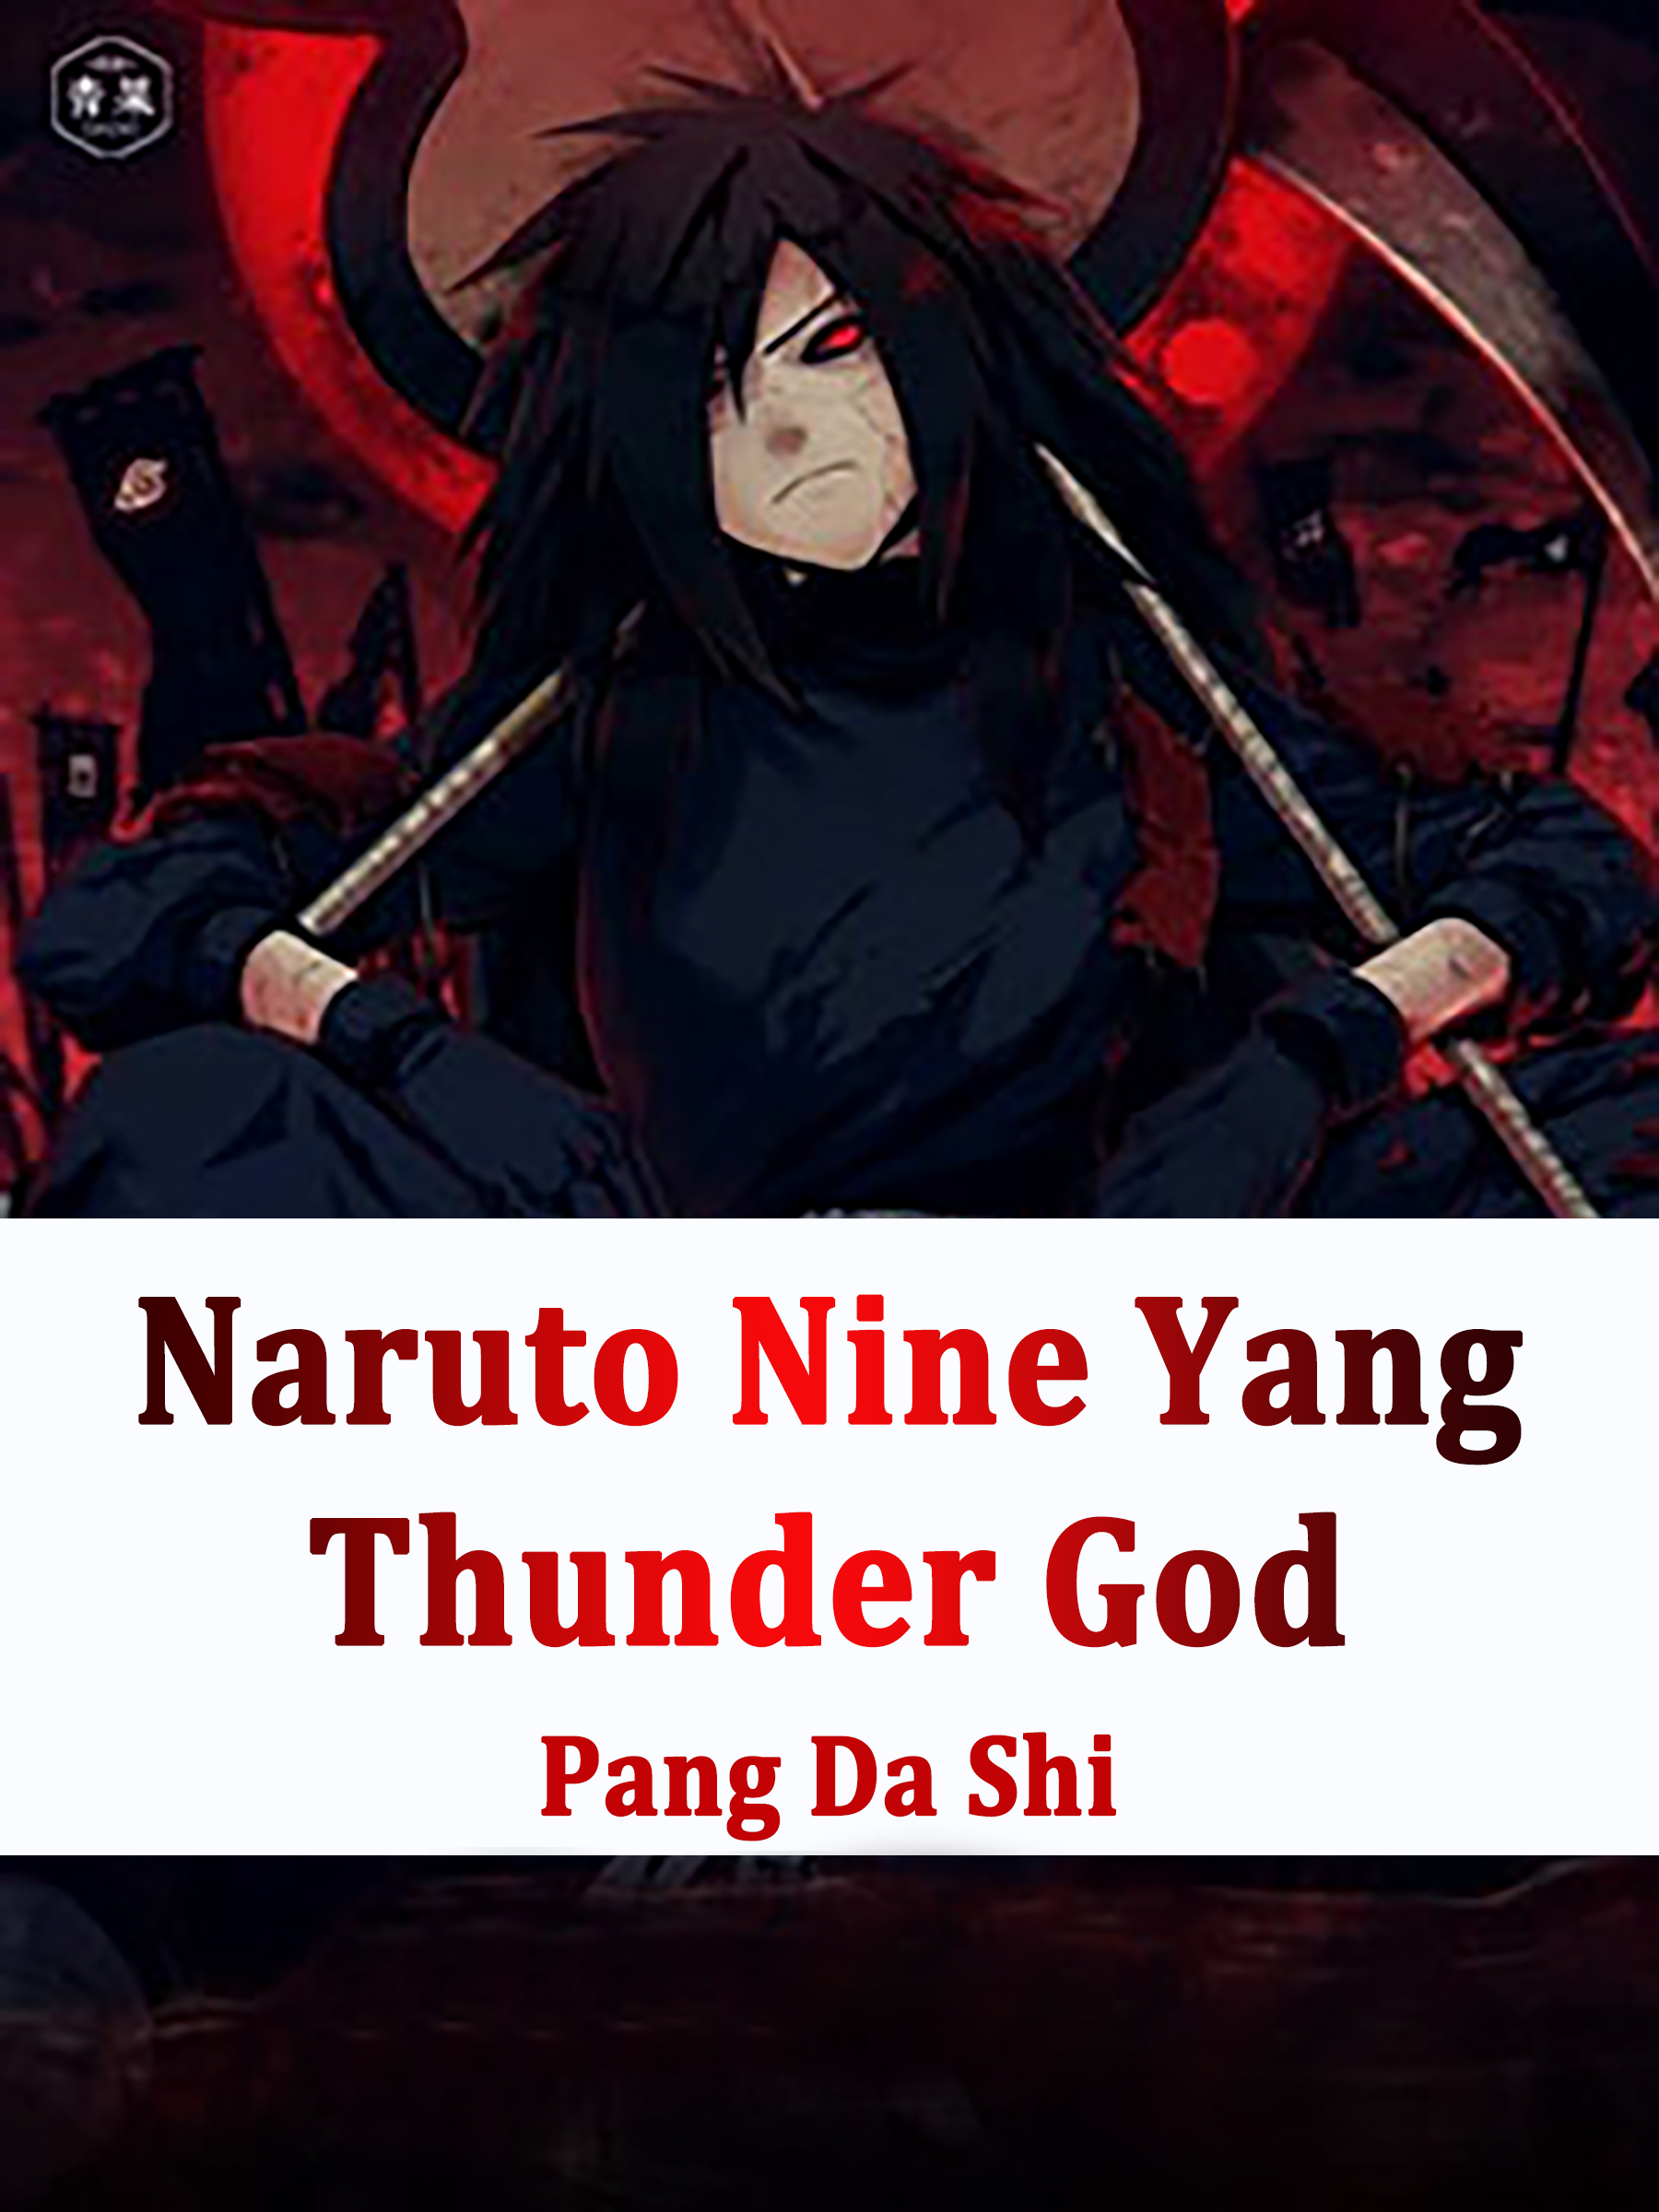 Naruto: Nine Yang Thunder God